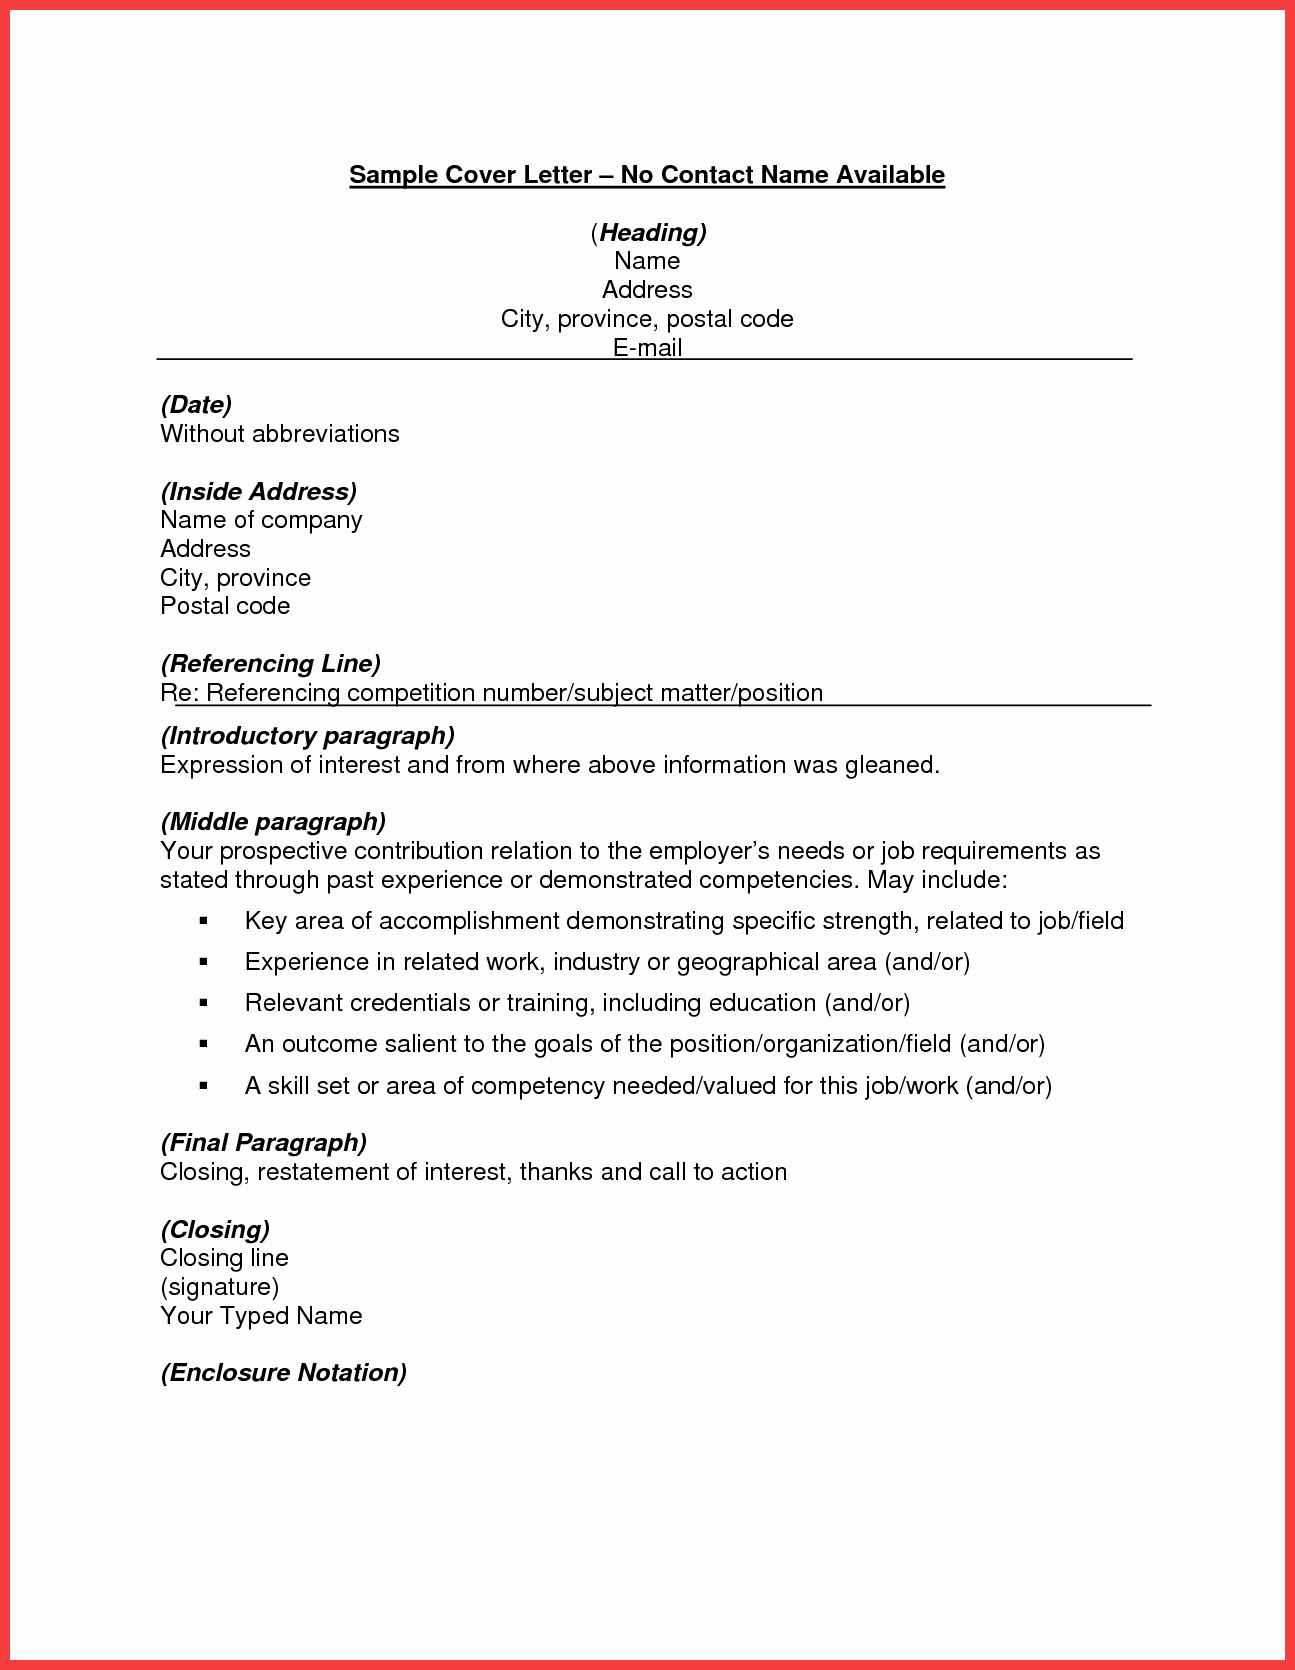 Sample Resume for Job Fair